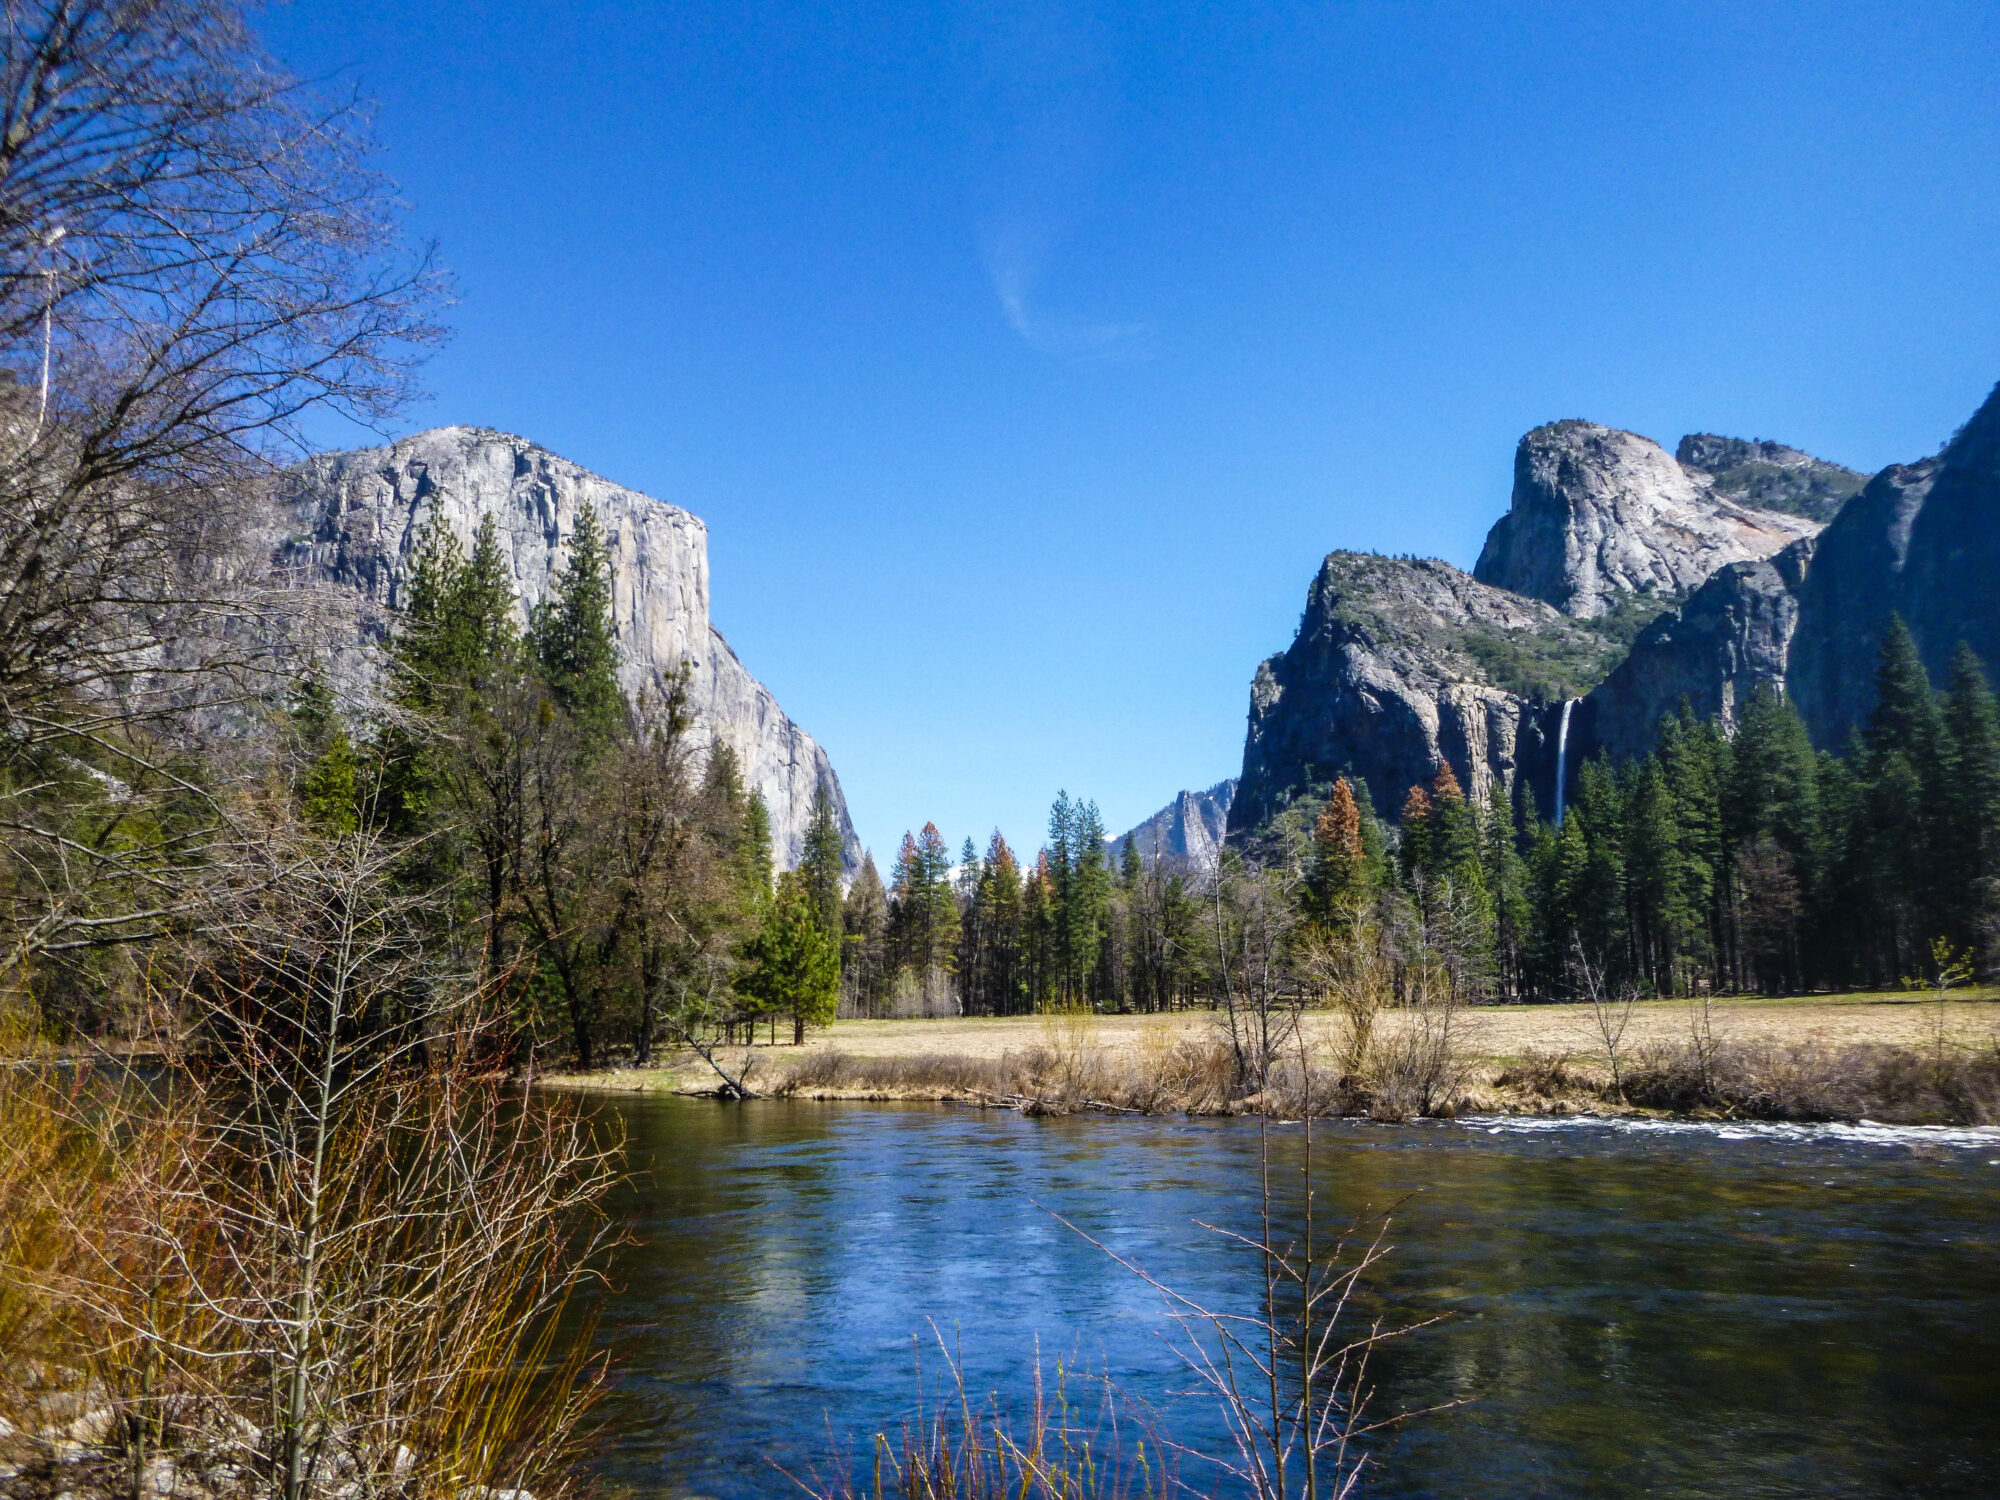 El Cap, Three Brothers and the Merced River